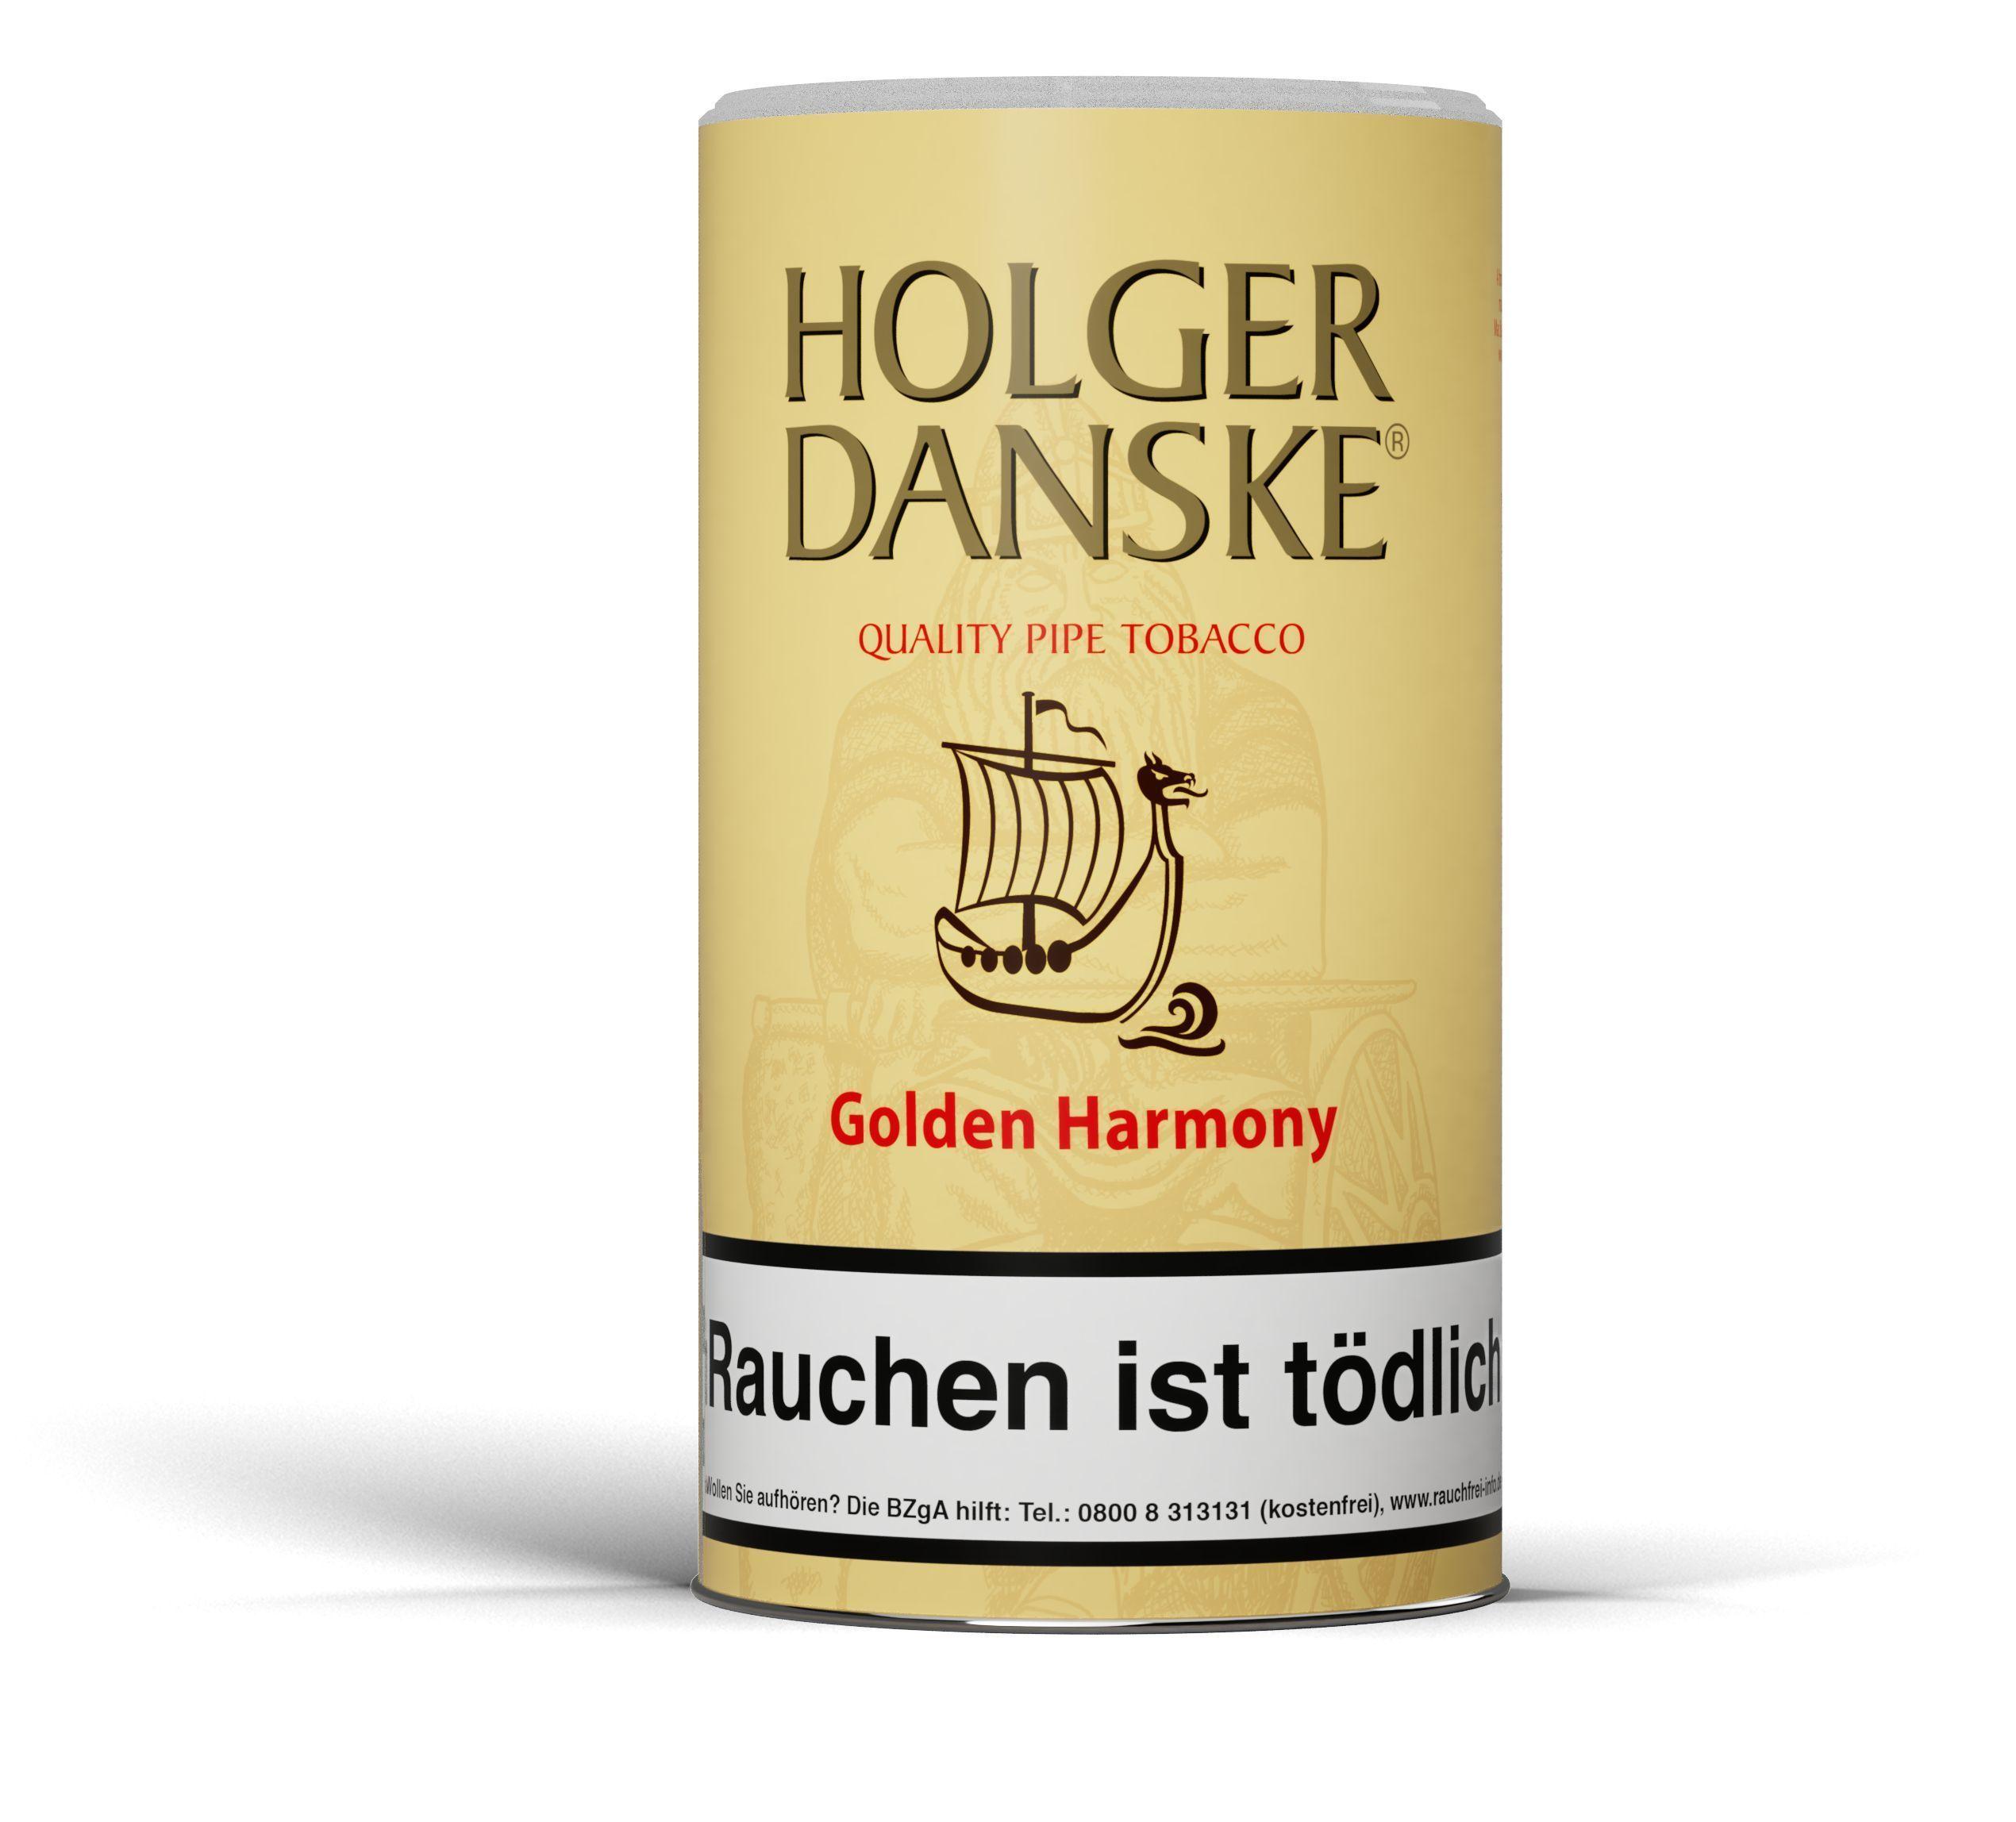 Holger Danske Pfeifentabak Golden Harmony 1 Dose